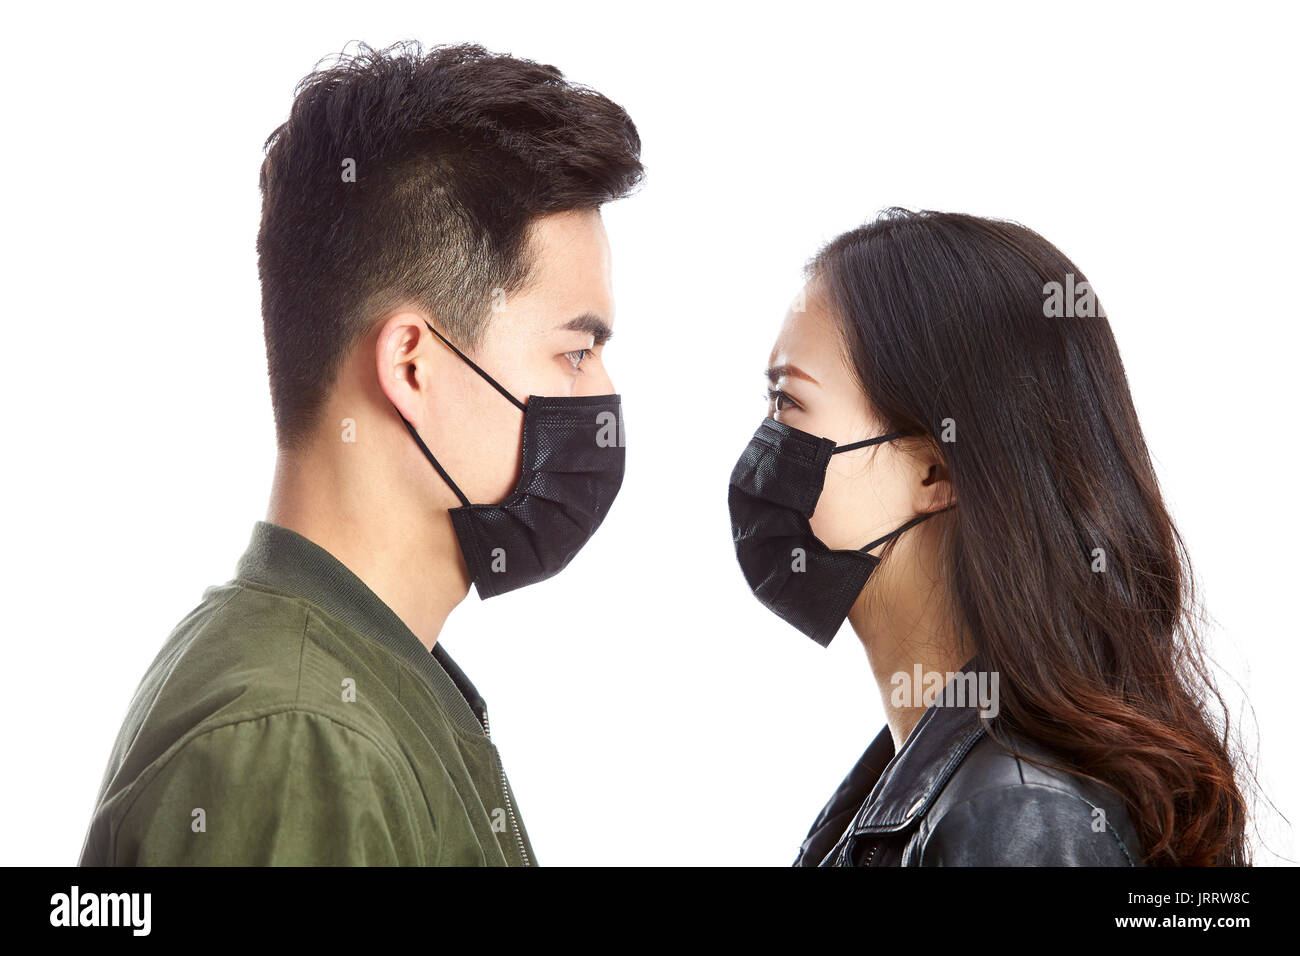 Jungen asiatischen Mann und Frau tragen schwarze Maske an einander anzustarren, auf weißem Hintergrund. Stockfoto